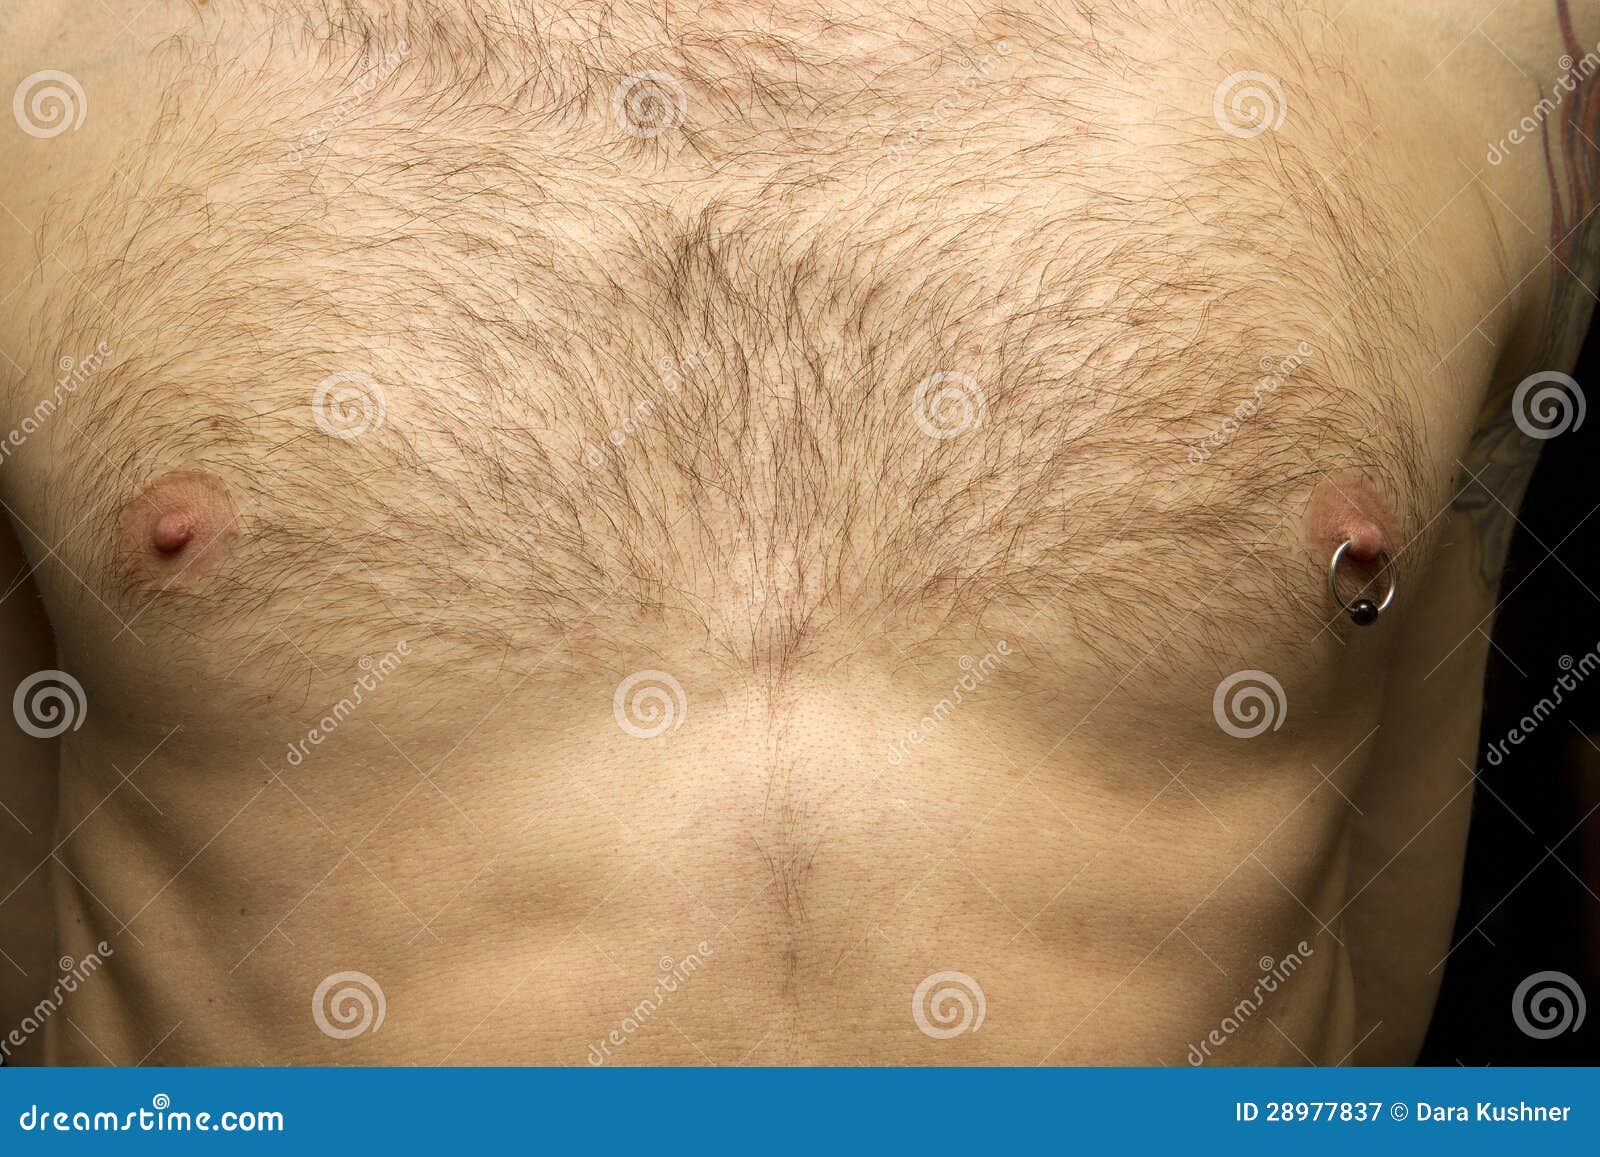 пирсинг груди у мужчин фото 15